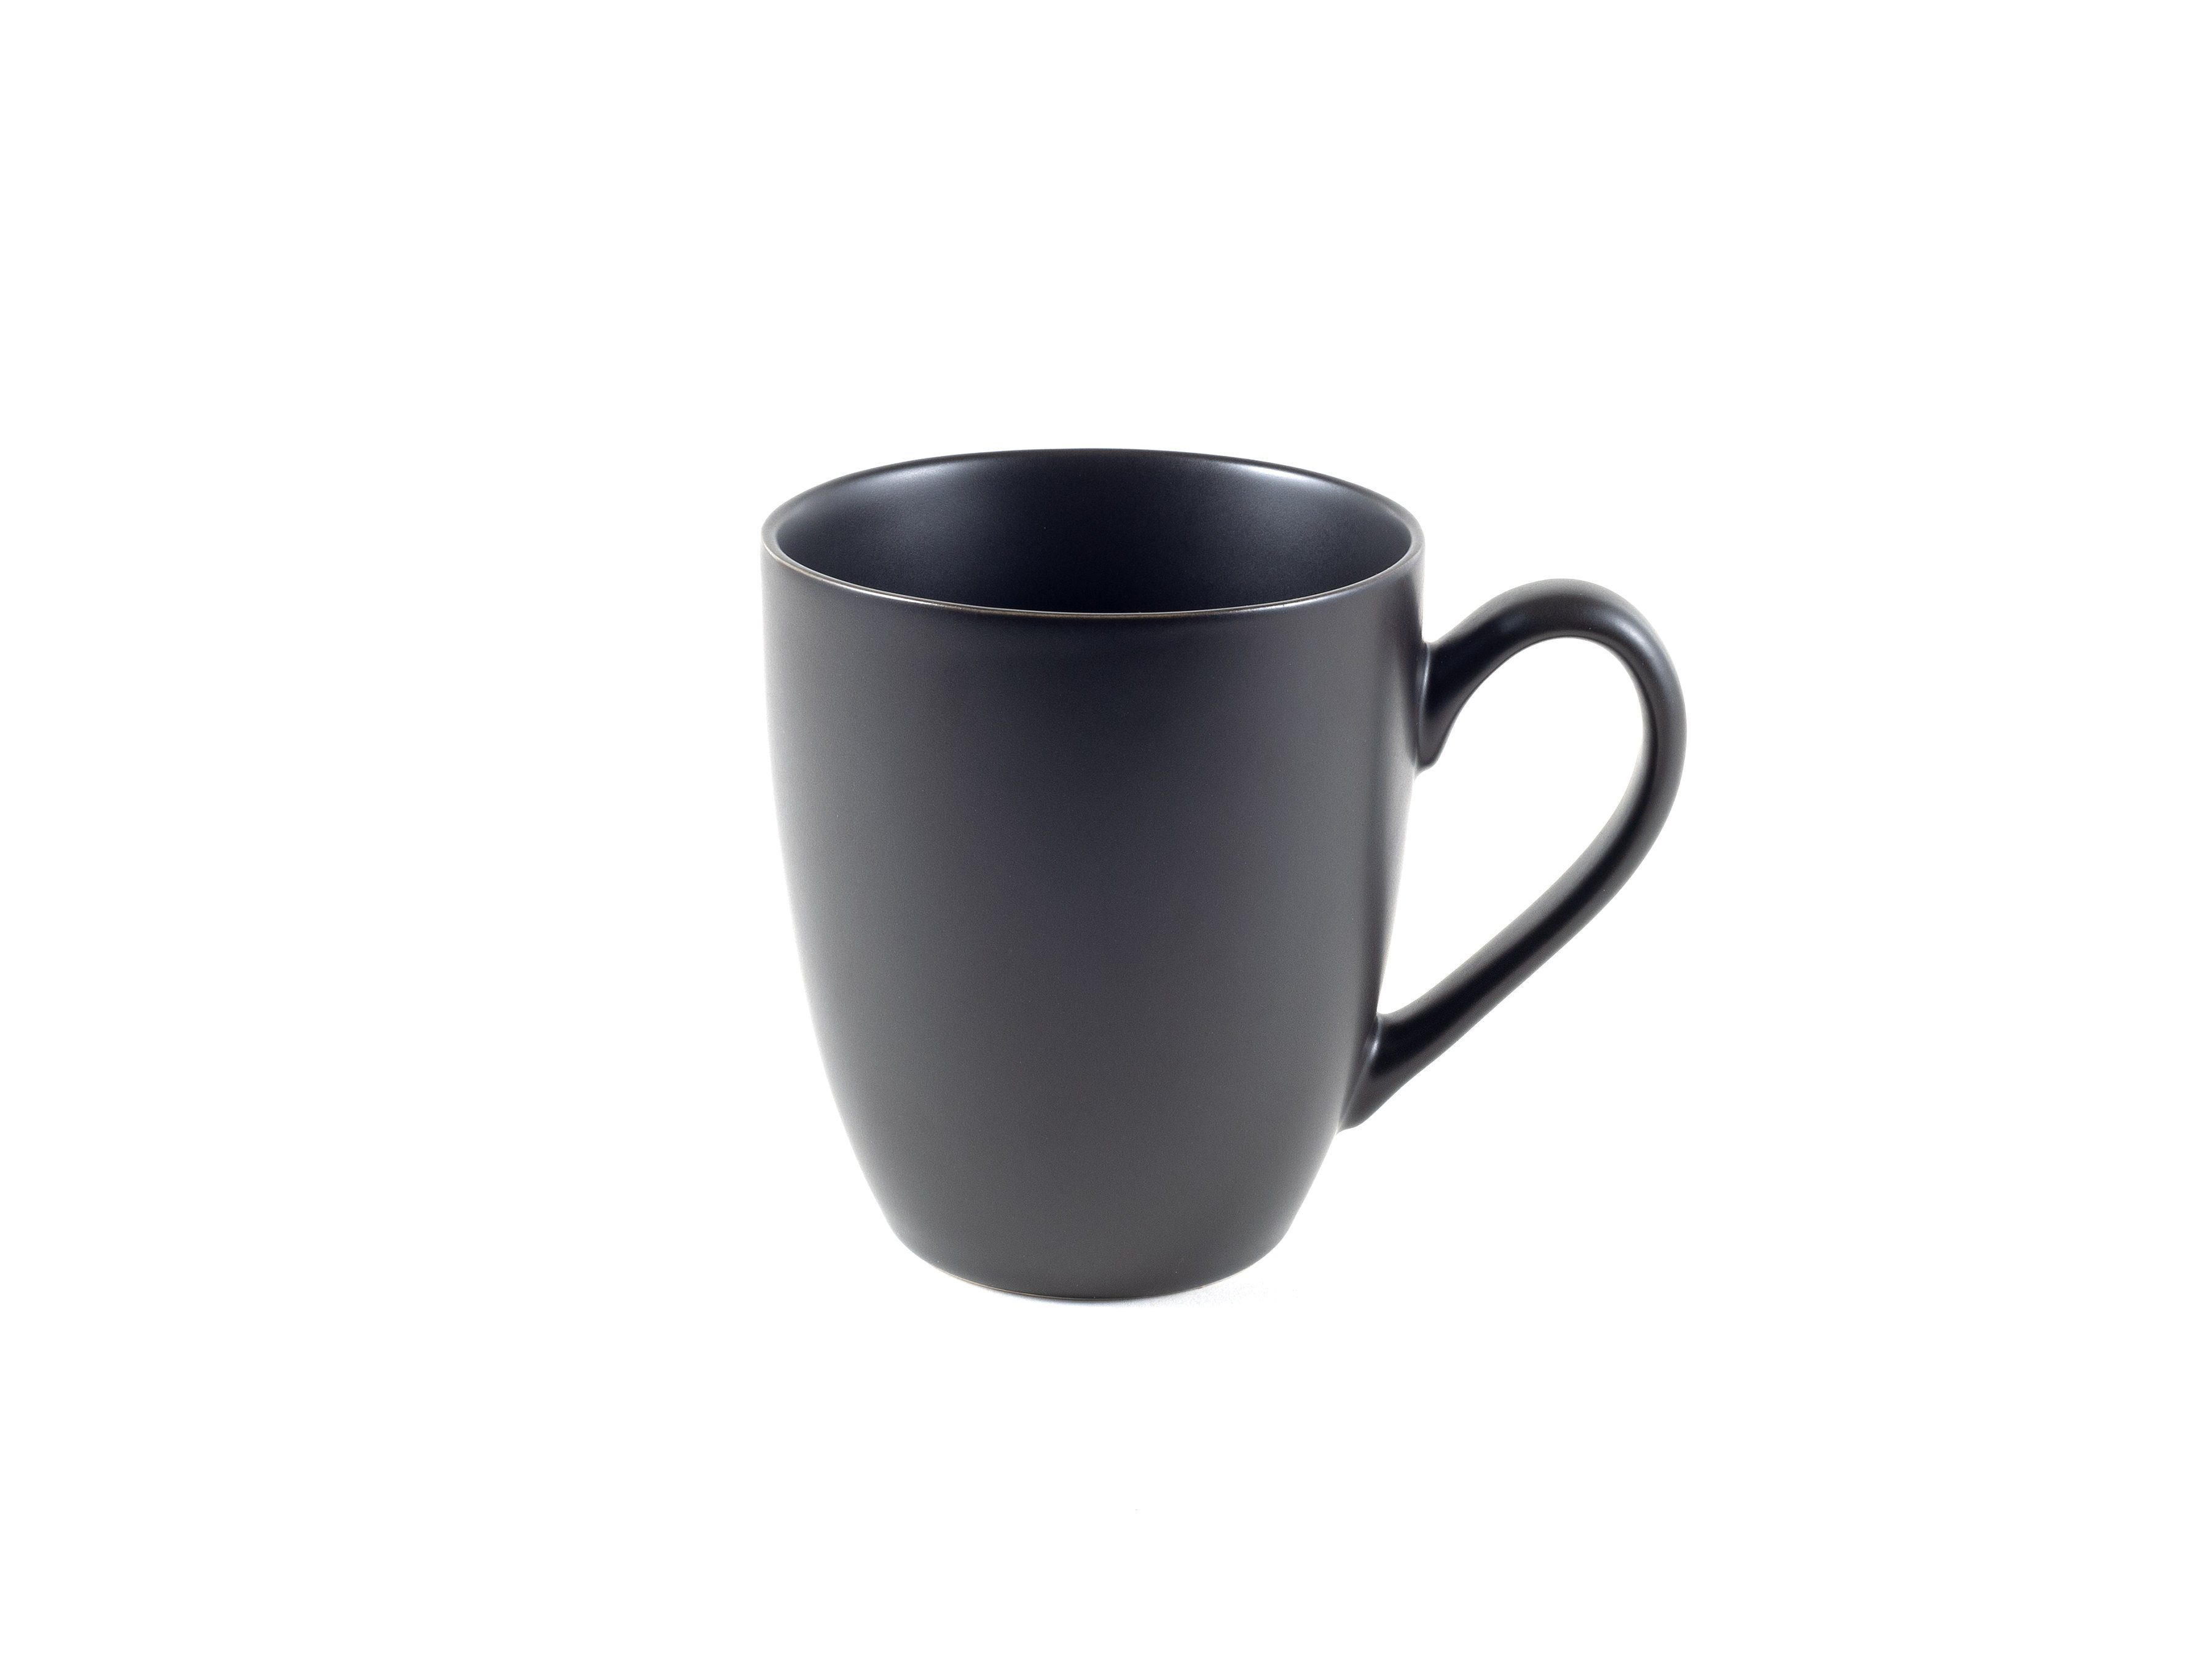 Hanseküche Tasse Teetasse mit Deckel Sieb Thermoeffekt, mit Teebecher Dickwandige Keramik, – Schwarz 650ml, Ultrafeinfilter, XXL und Keramik